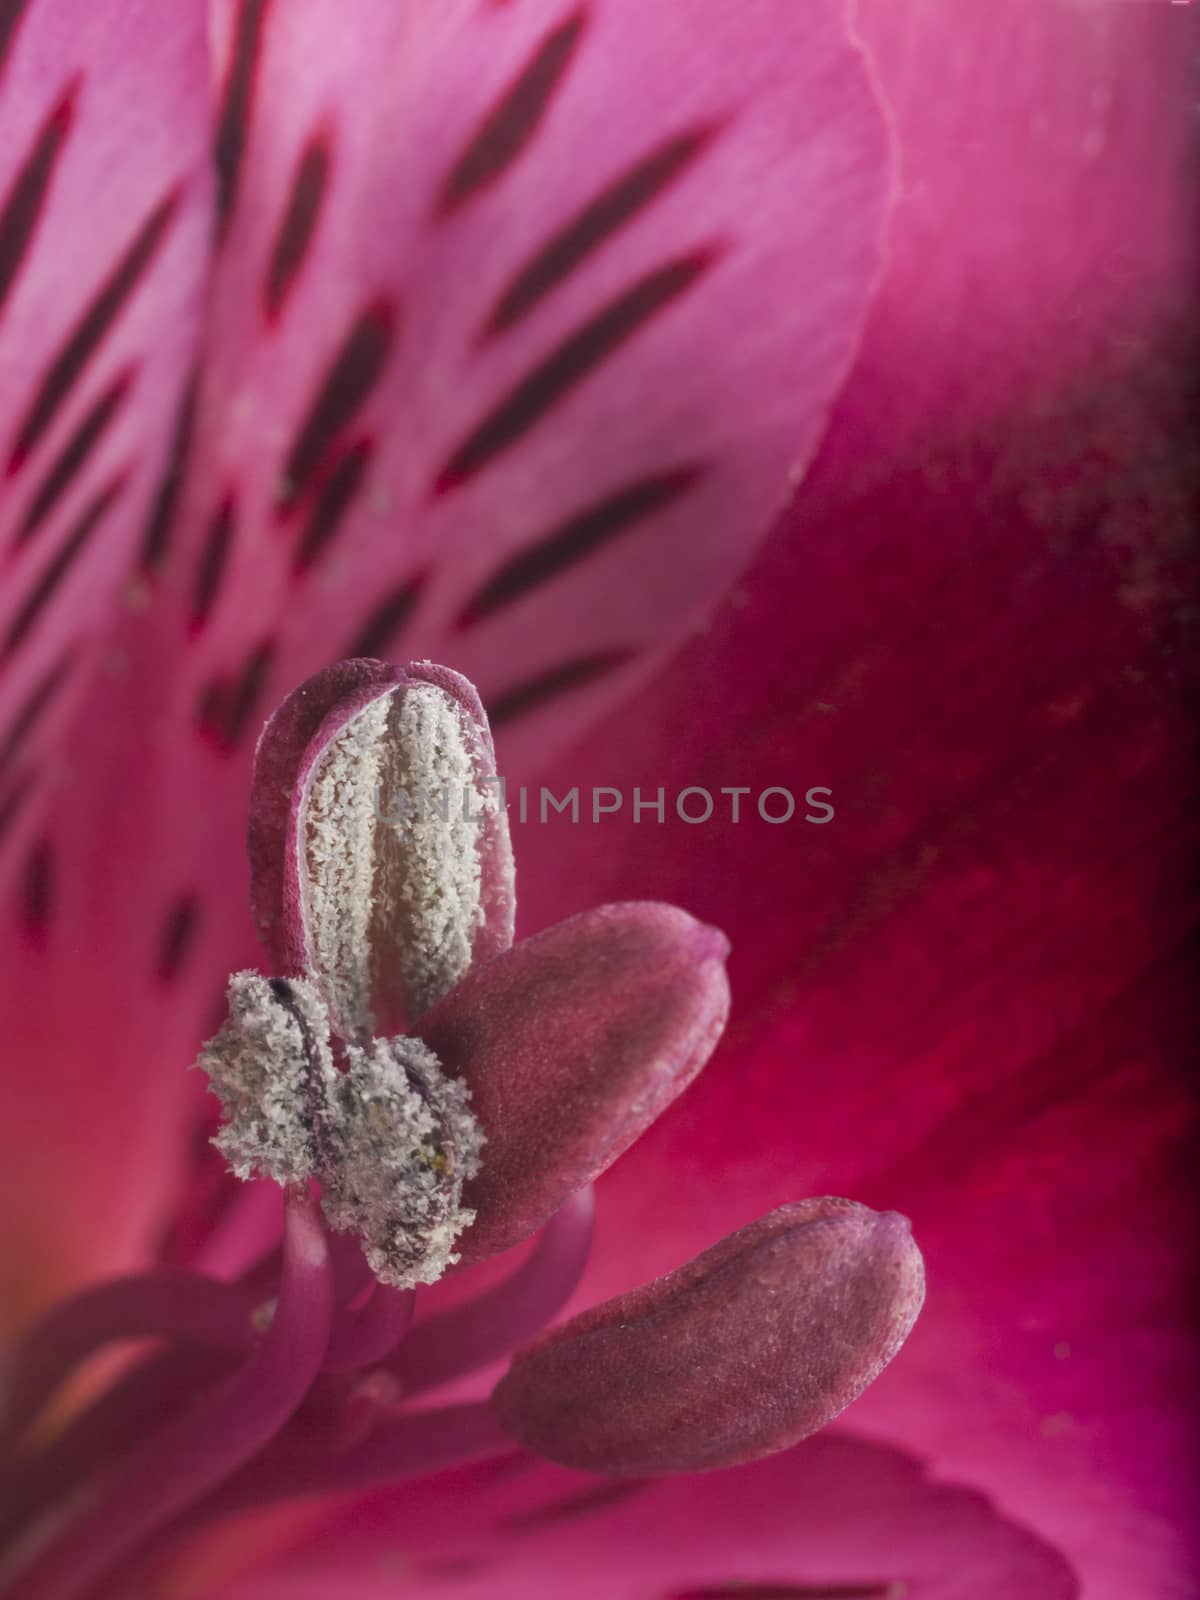 A macro shot of an alstroemeria flower